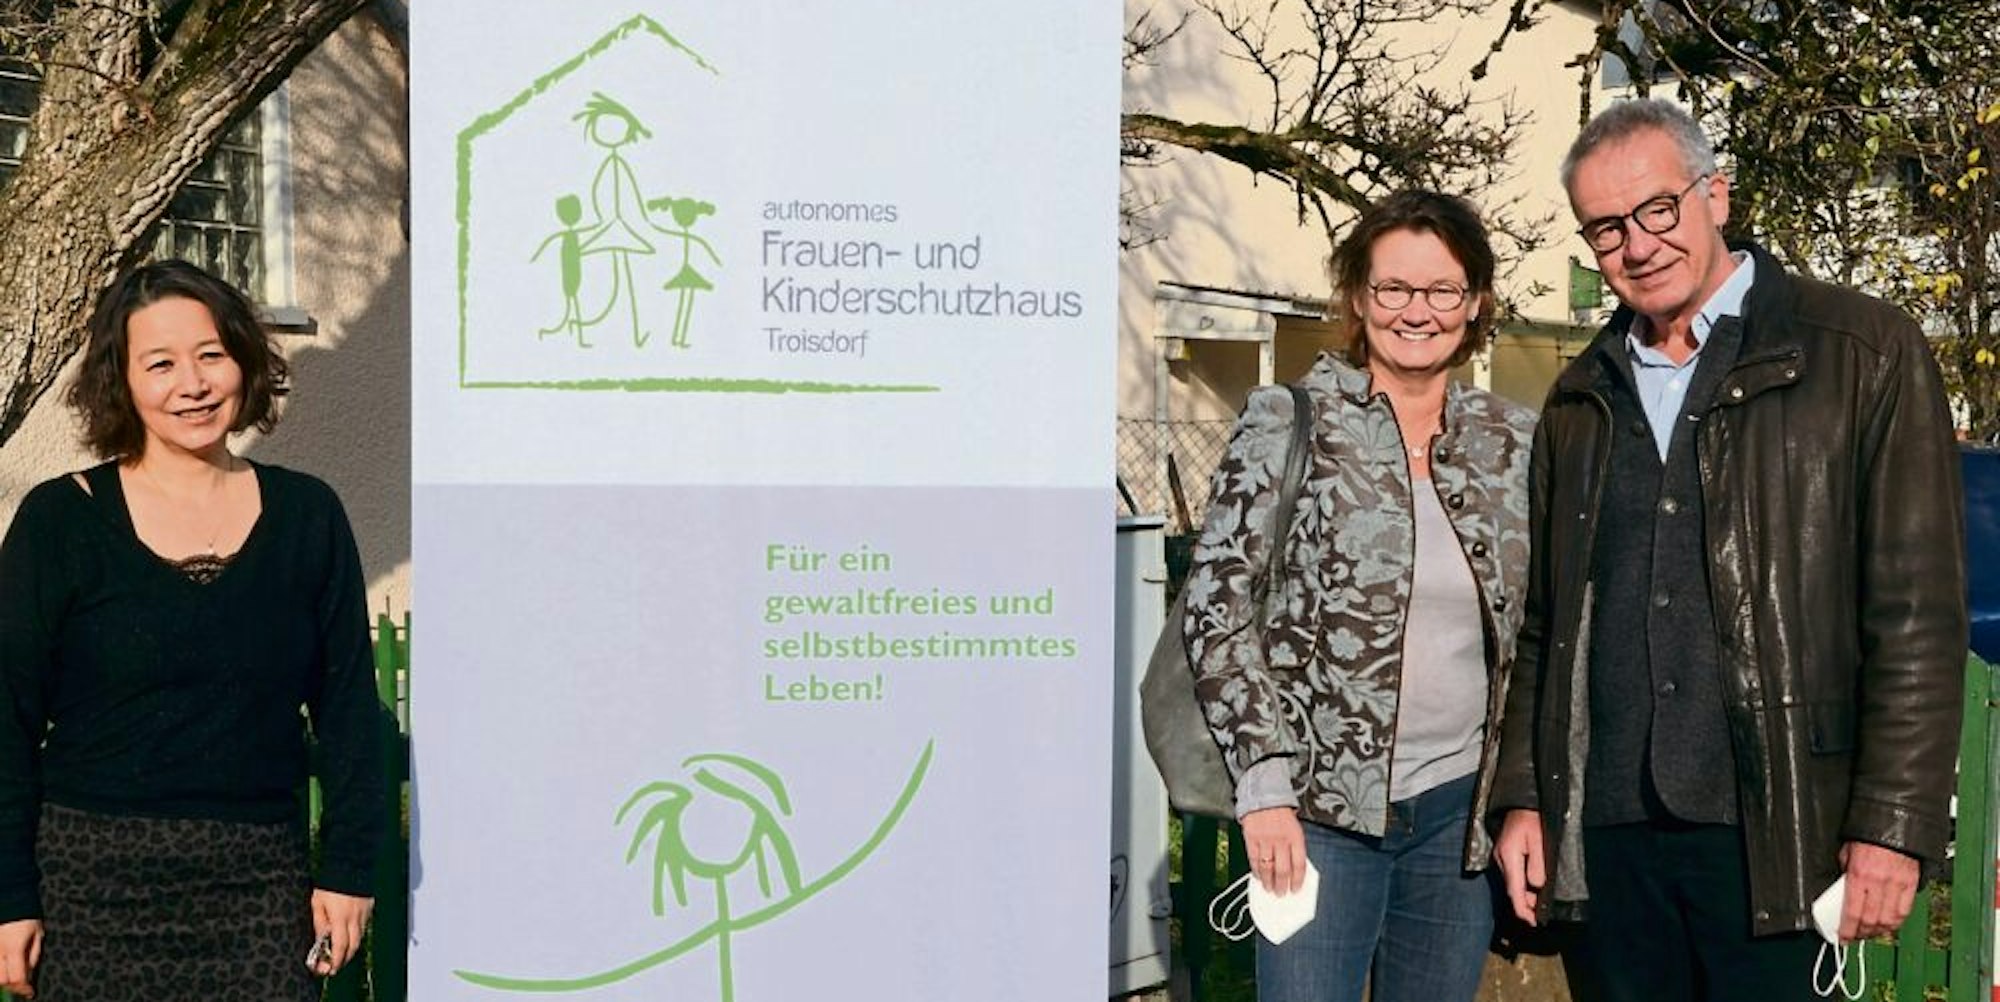 Mit 15 000 Euro unterstützen Susi und Klaus Reifenhäuser die Arbeit des Vereins Frauen helfen Frauen, vertreten durch Michiko Park (l.) Von dem Geld soll eine 450-Euro-Kraft zur Kinderbetreuung im Frauenhaus eingestellt werden.